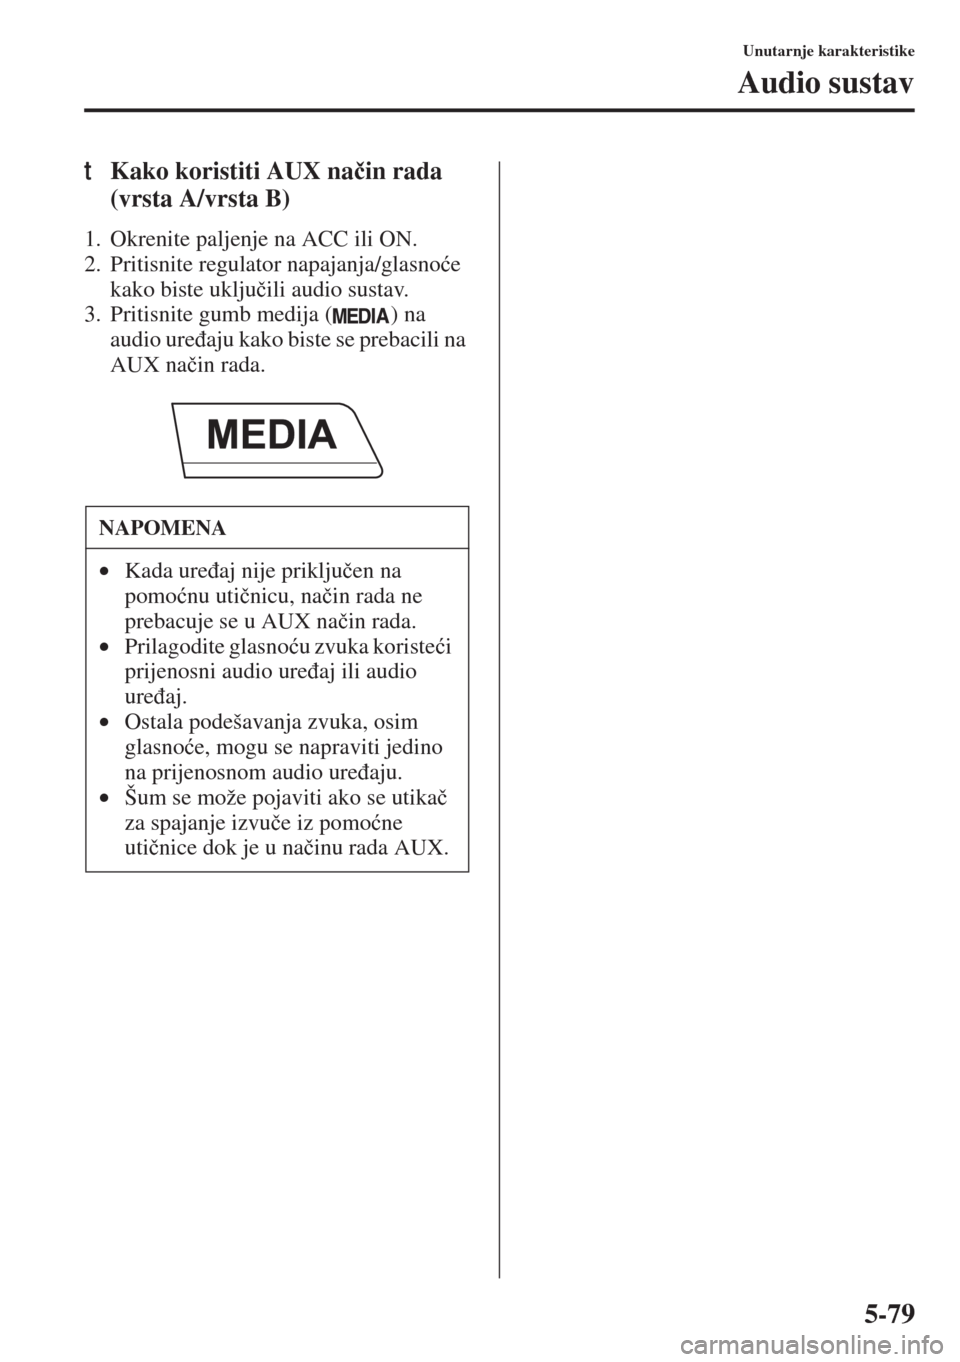 MAZDA MODEL 3 HATCHBACK 2015  Upute za uporabu (in Crotian) 5-79
Unutarnje karakteristike
Audio sustav
tKako koristiti AUX na�þin rada 
(vrsta A/vrsta B)
1. Okrenite paljenje na ACC ili ON.
2. Pritisnite regulator napajanja/glasno�üe 
kako biste uklju�þili 